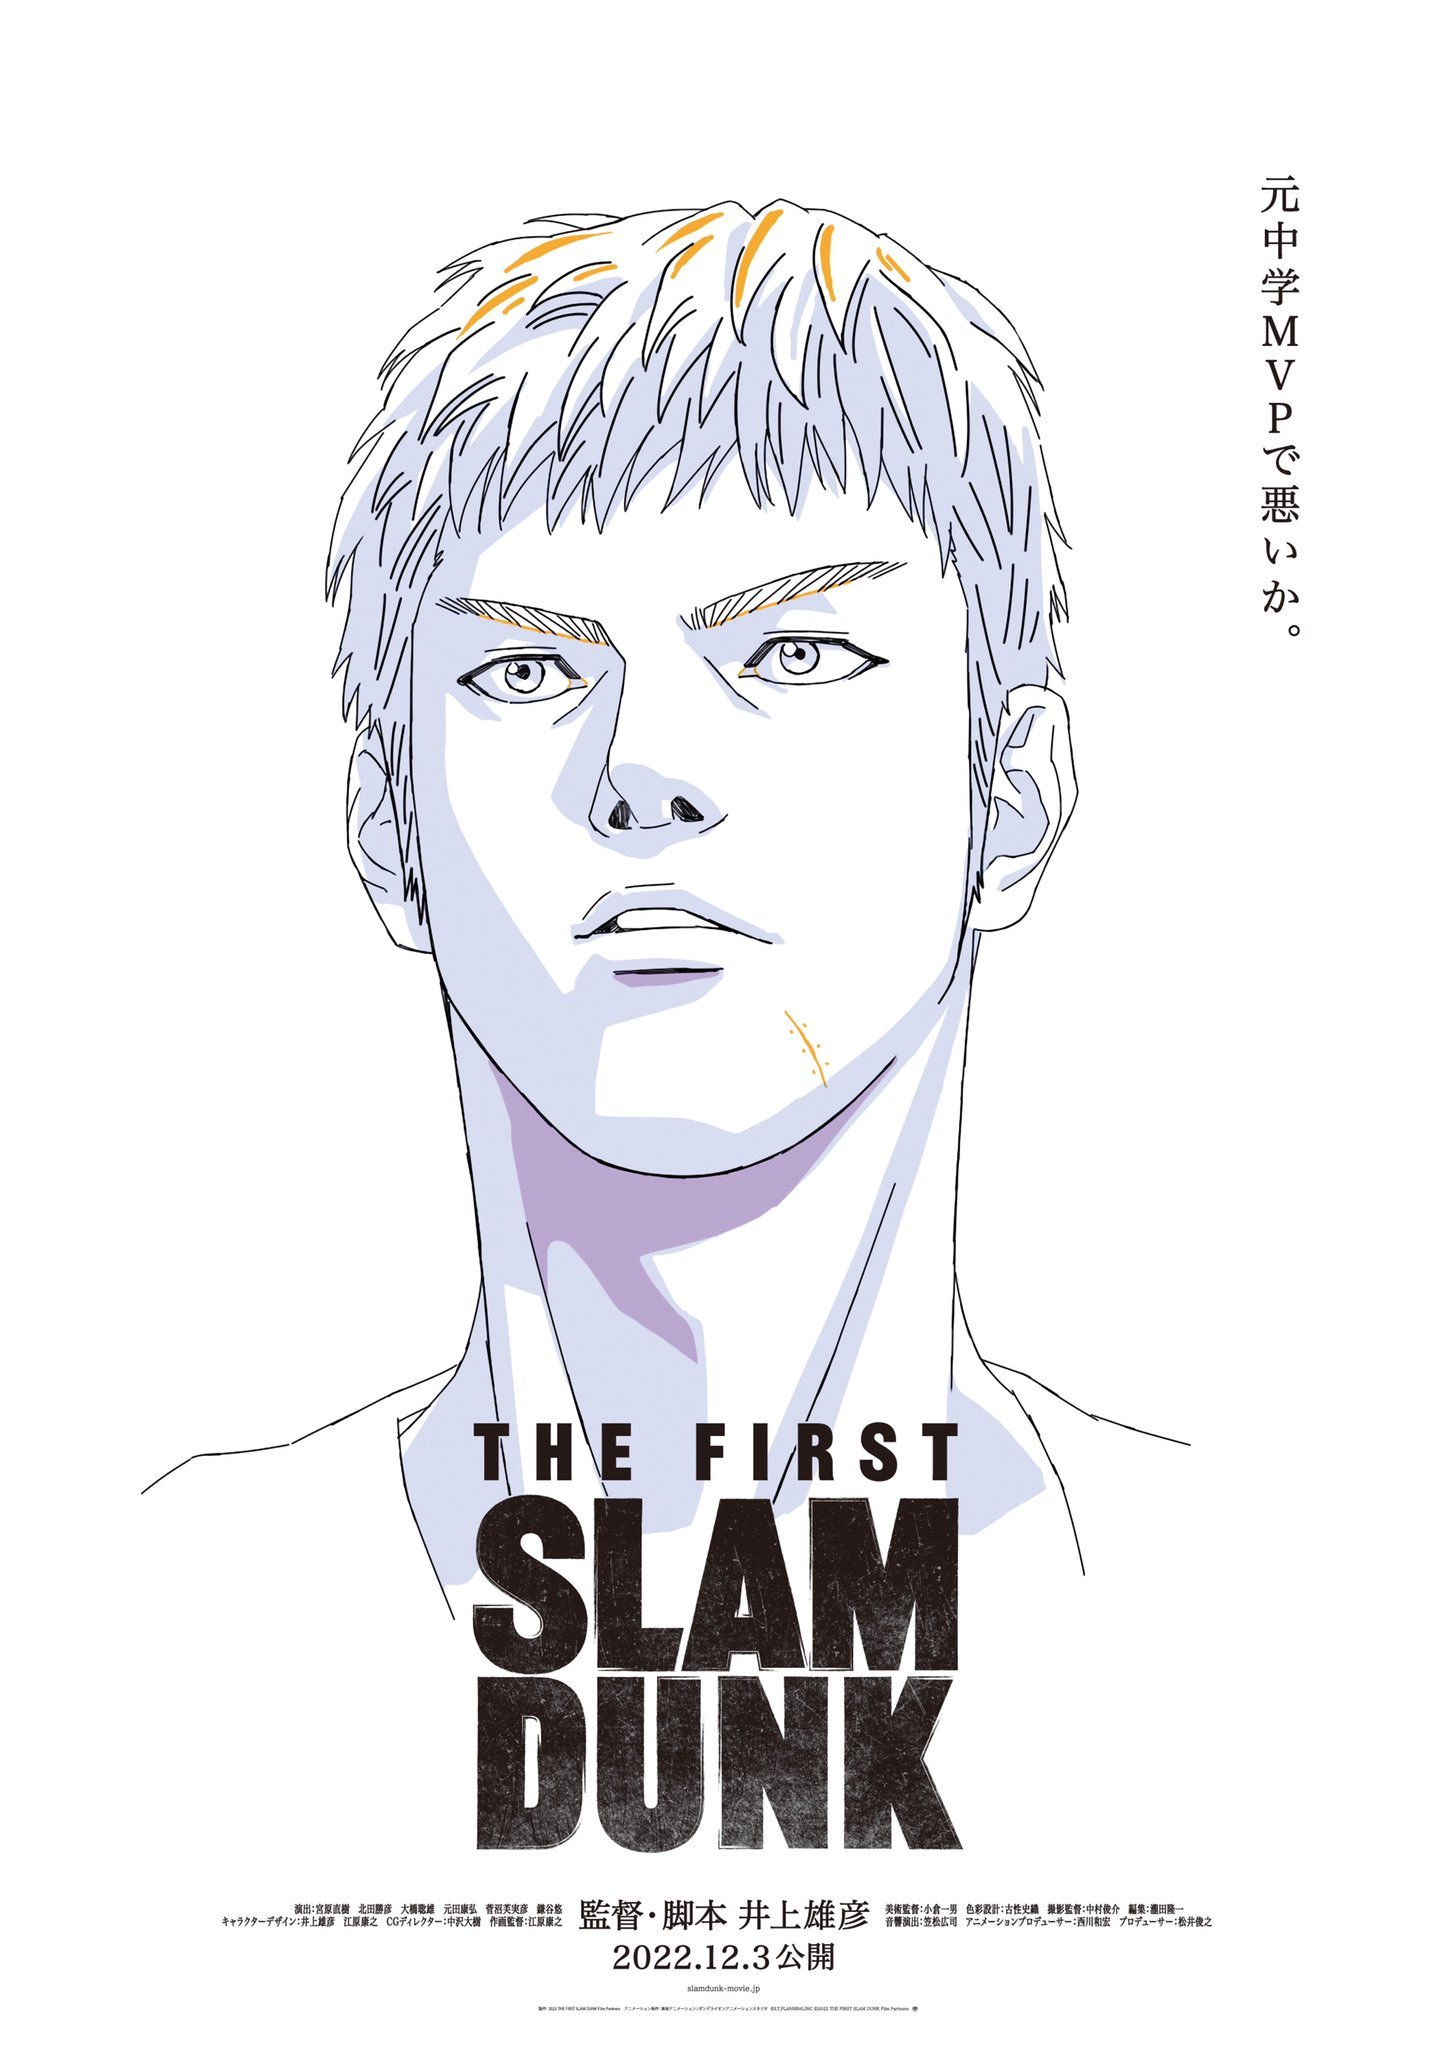 灌篮高手的新电影《THE FIRST SLAM DUNK》12月3日上映插图2